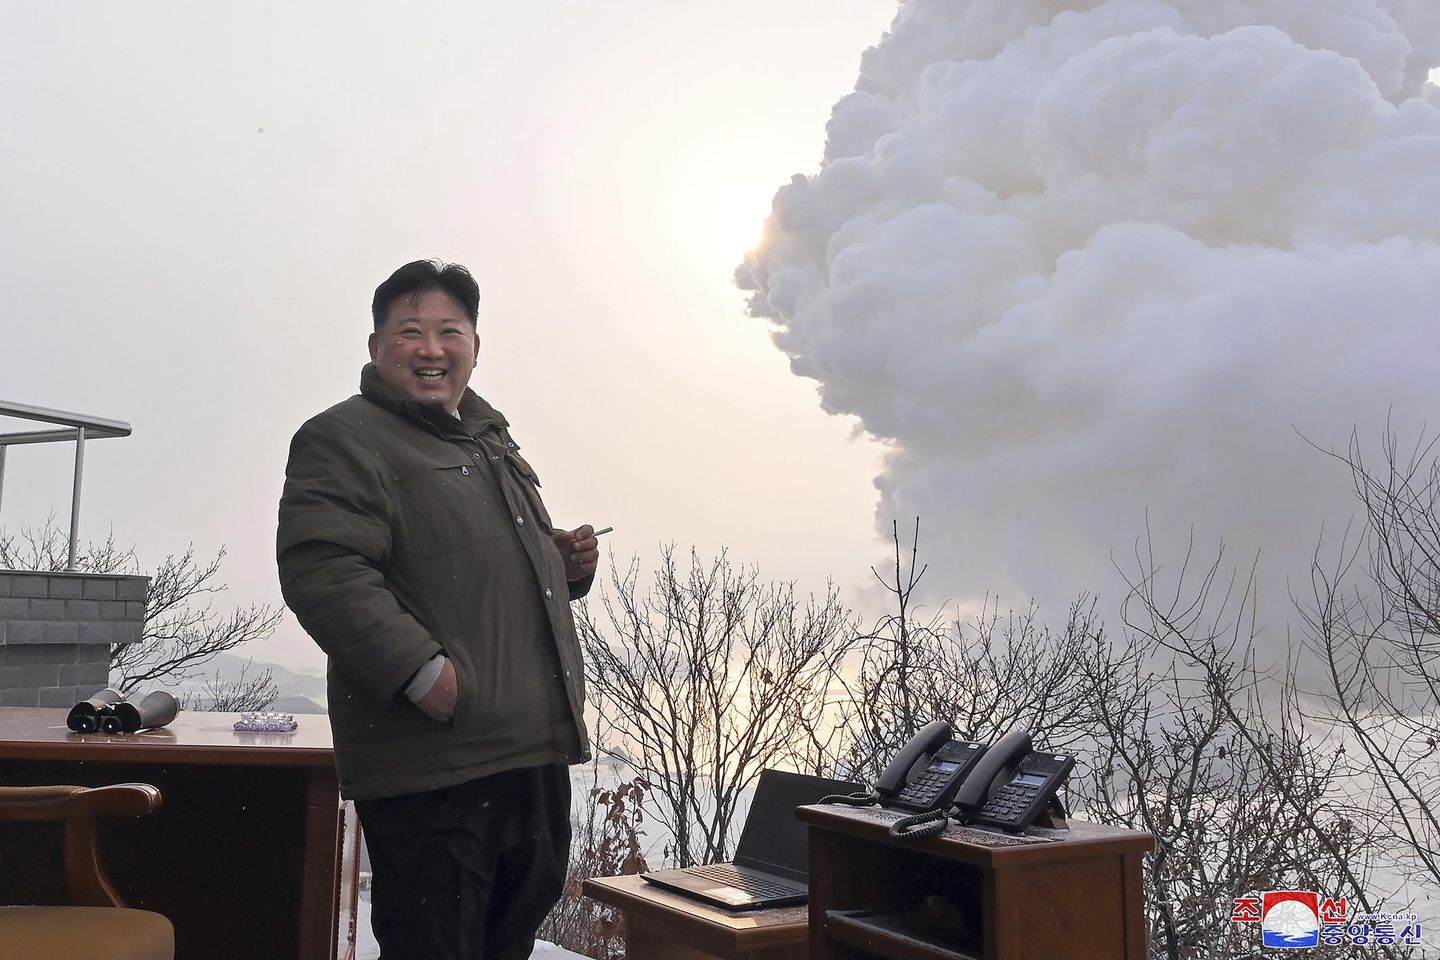 Kuzey Kore, yeni ICBM motorunun testinde başarılı olduğunu iddia ediyor